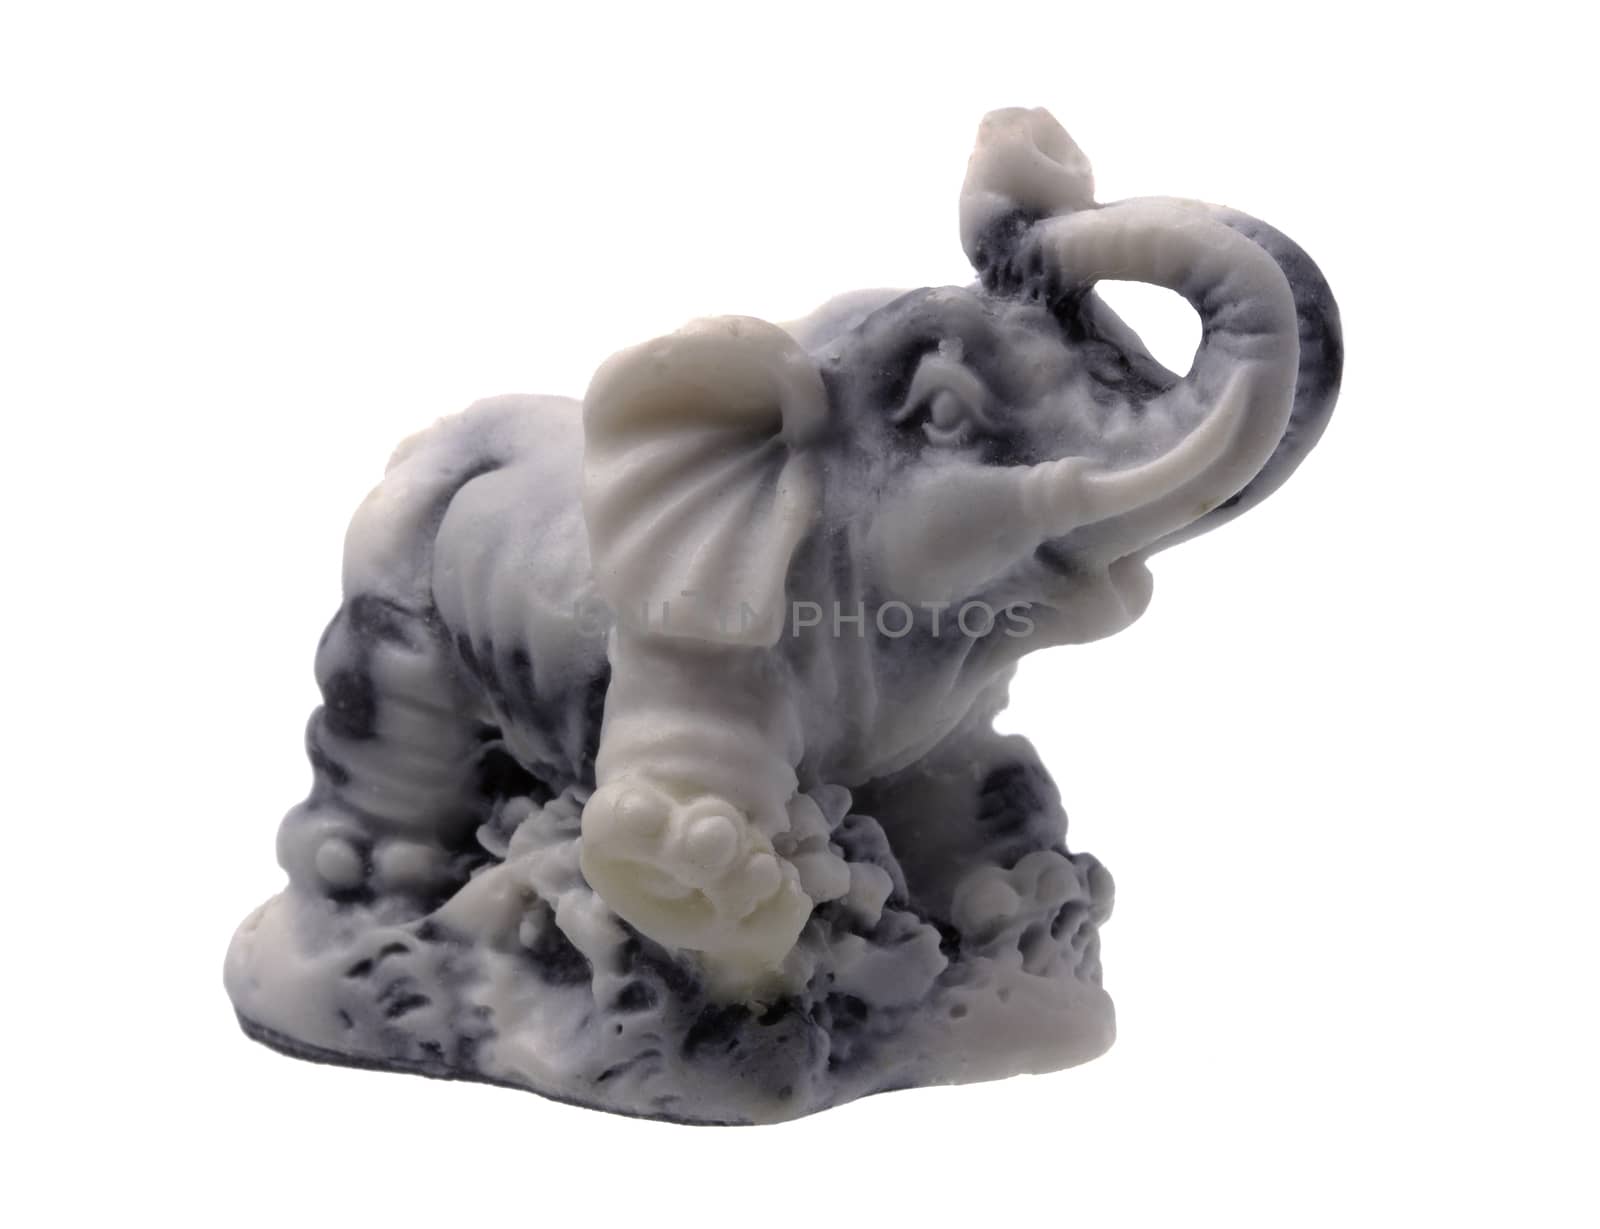 Grey Stone Elephant Figurine on white Background